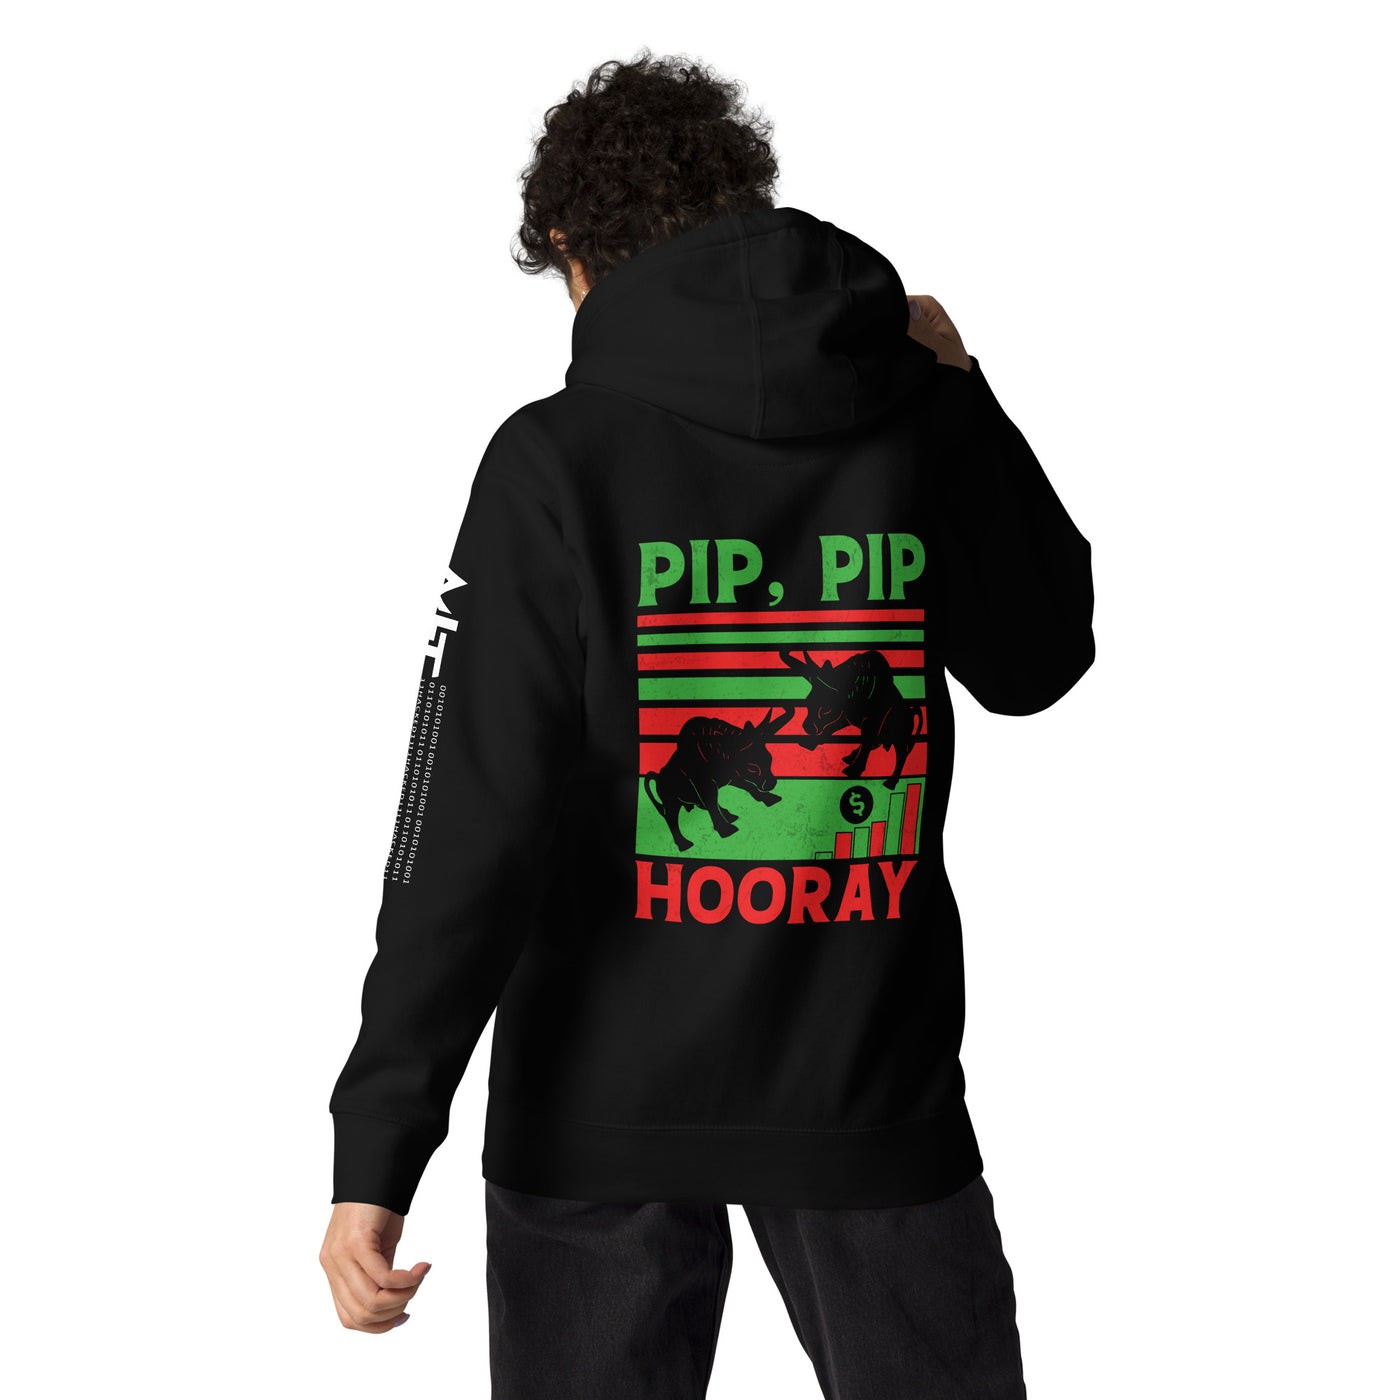 Pip, Pip Hooray - Unisex Hoodie ( Back Print )